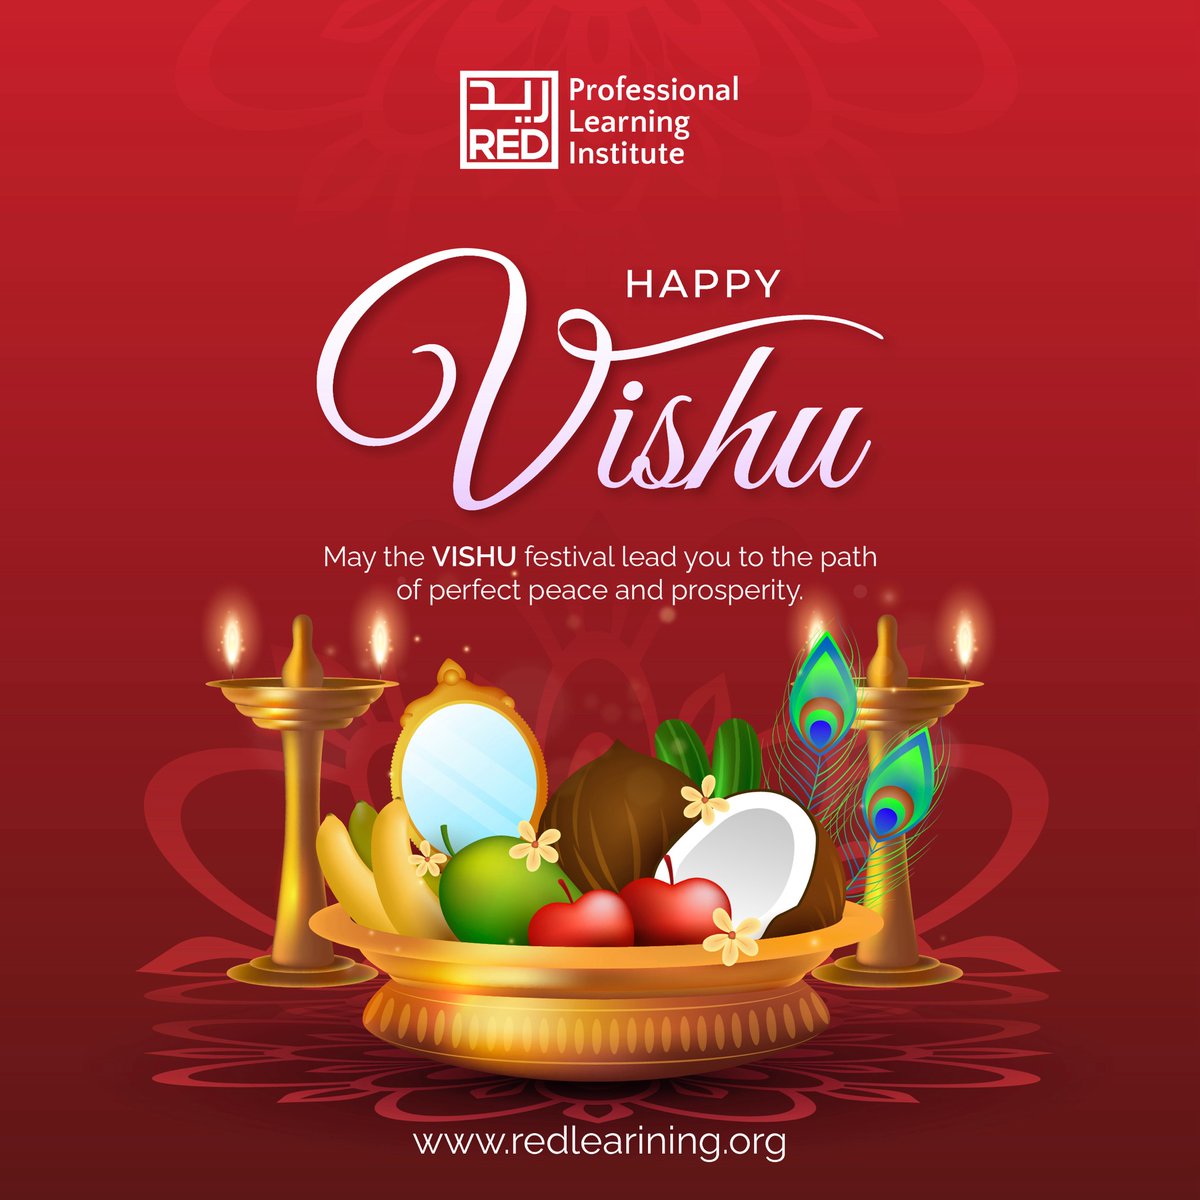 ✨Happy Vishu ✨

#HappyVishu #VishuCelebration #JoyAndProsperity #HarvestFestival